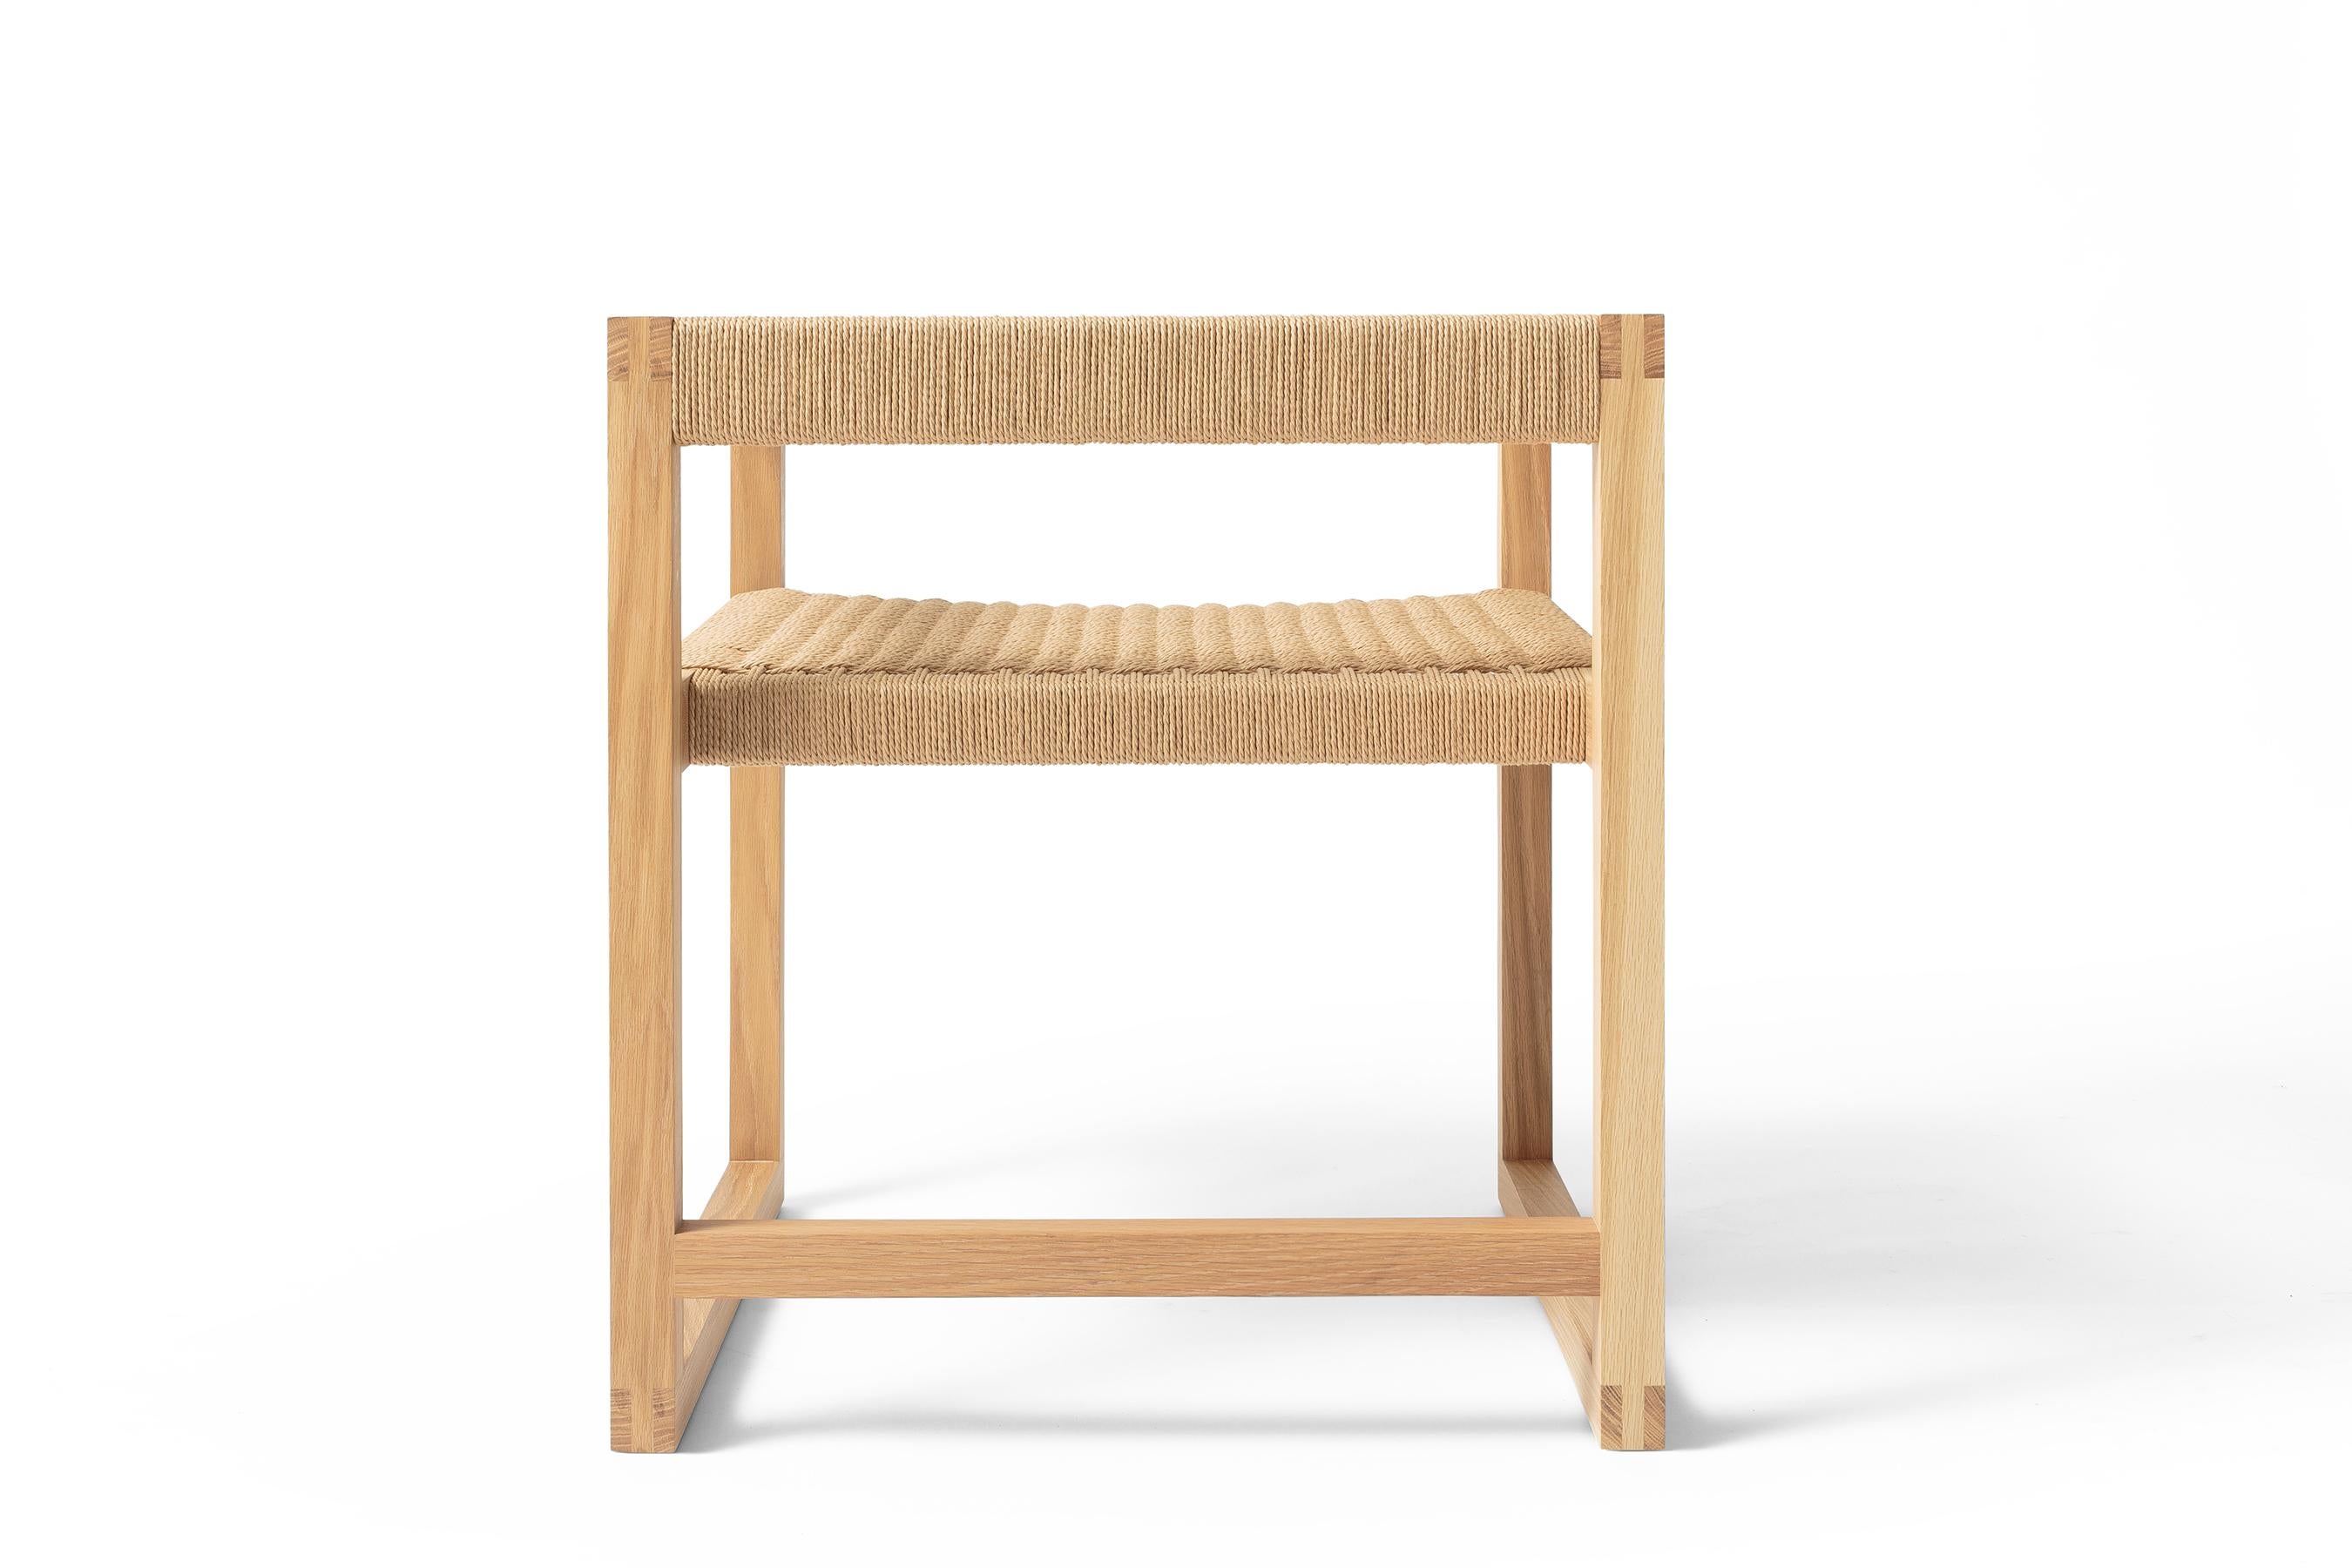 Avec sa menuiserie apparente et un mélange de lignes dures et douces, la Canva Chair explore l'amour des matériaux et de l'artisanat, associé à un accueil chaleureux. Construite avec une armature apparente à joints de brides et un siège tissé à la